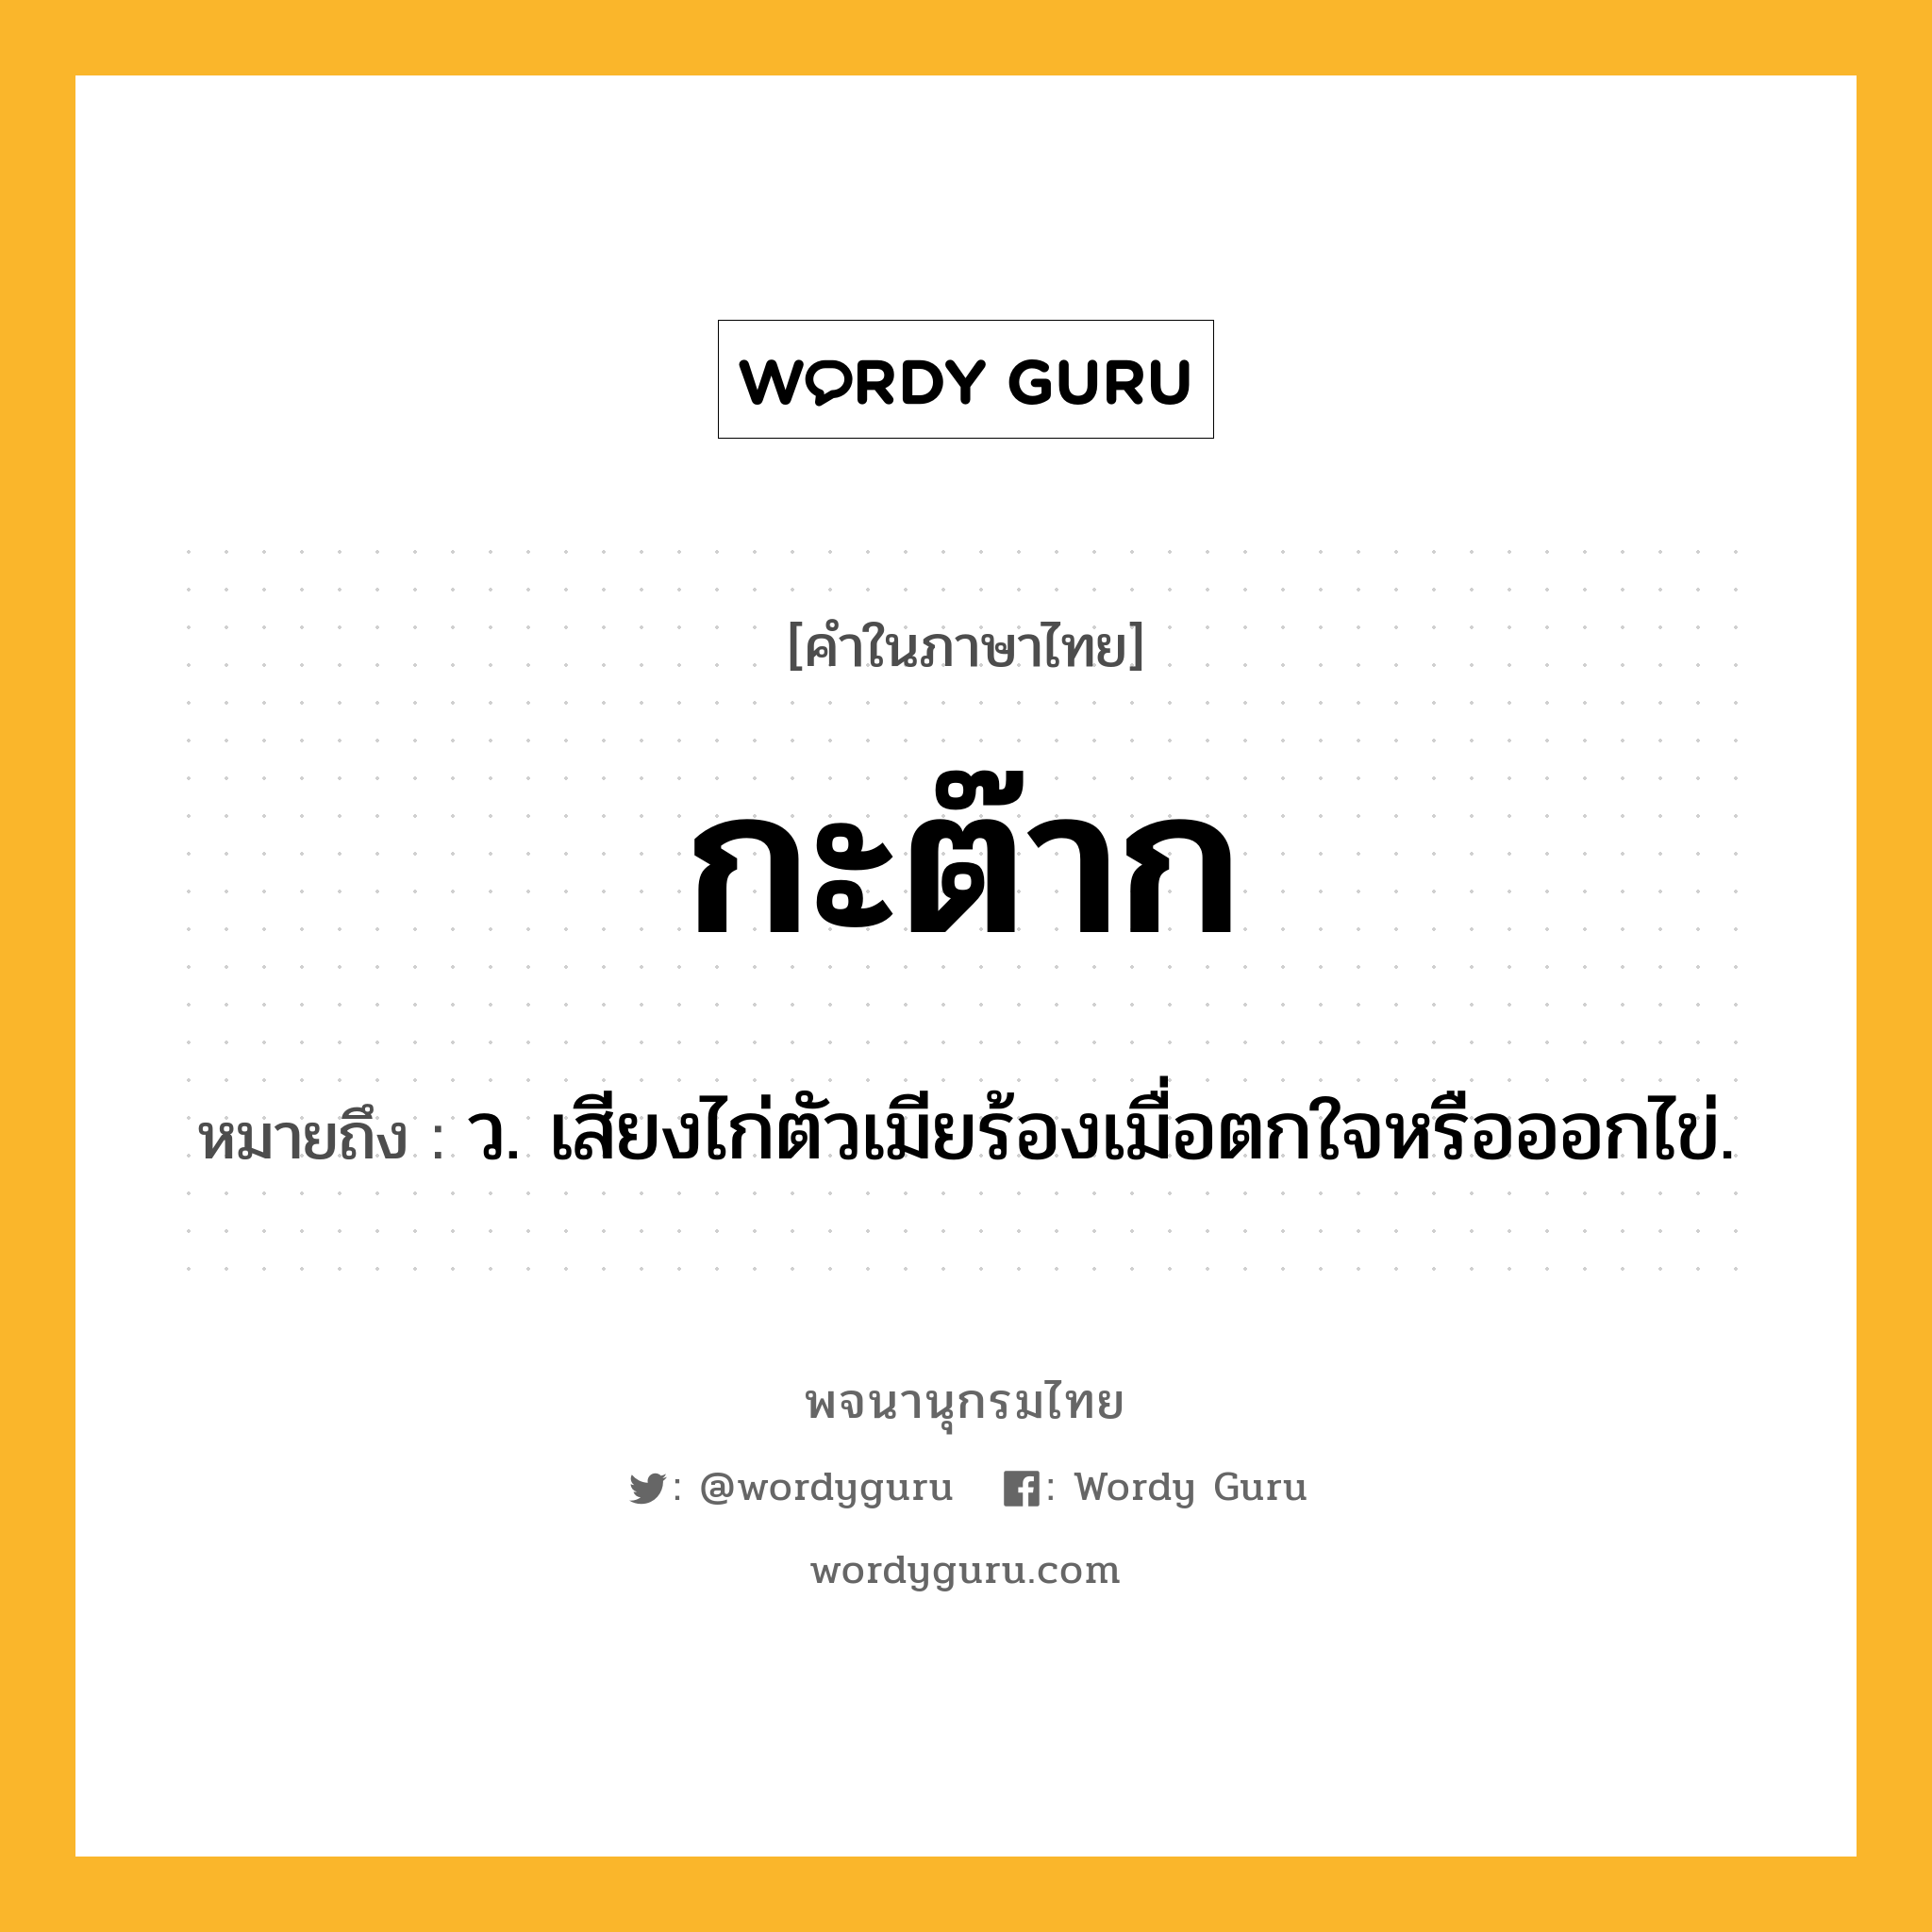 กะต๊าก ความหมาย หมายถึงอะไร?, คำในภาษาไทย กะต๊าก หมายถึง ว. เสียงไก่ตัวเมียร้องเมื่อตกใจหรือออกไข่.